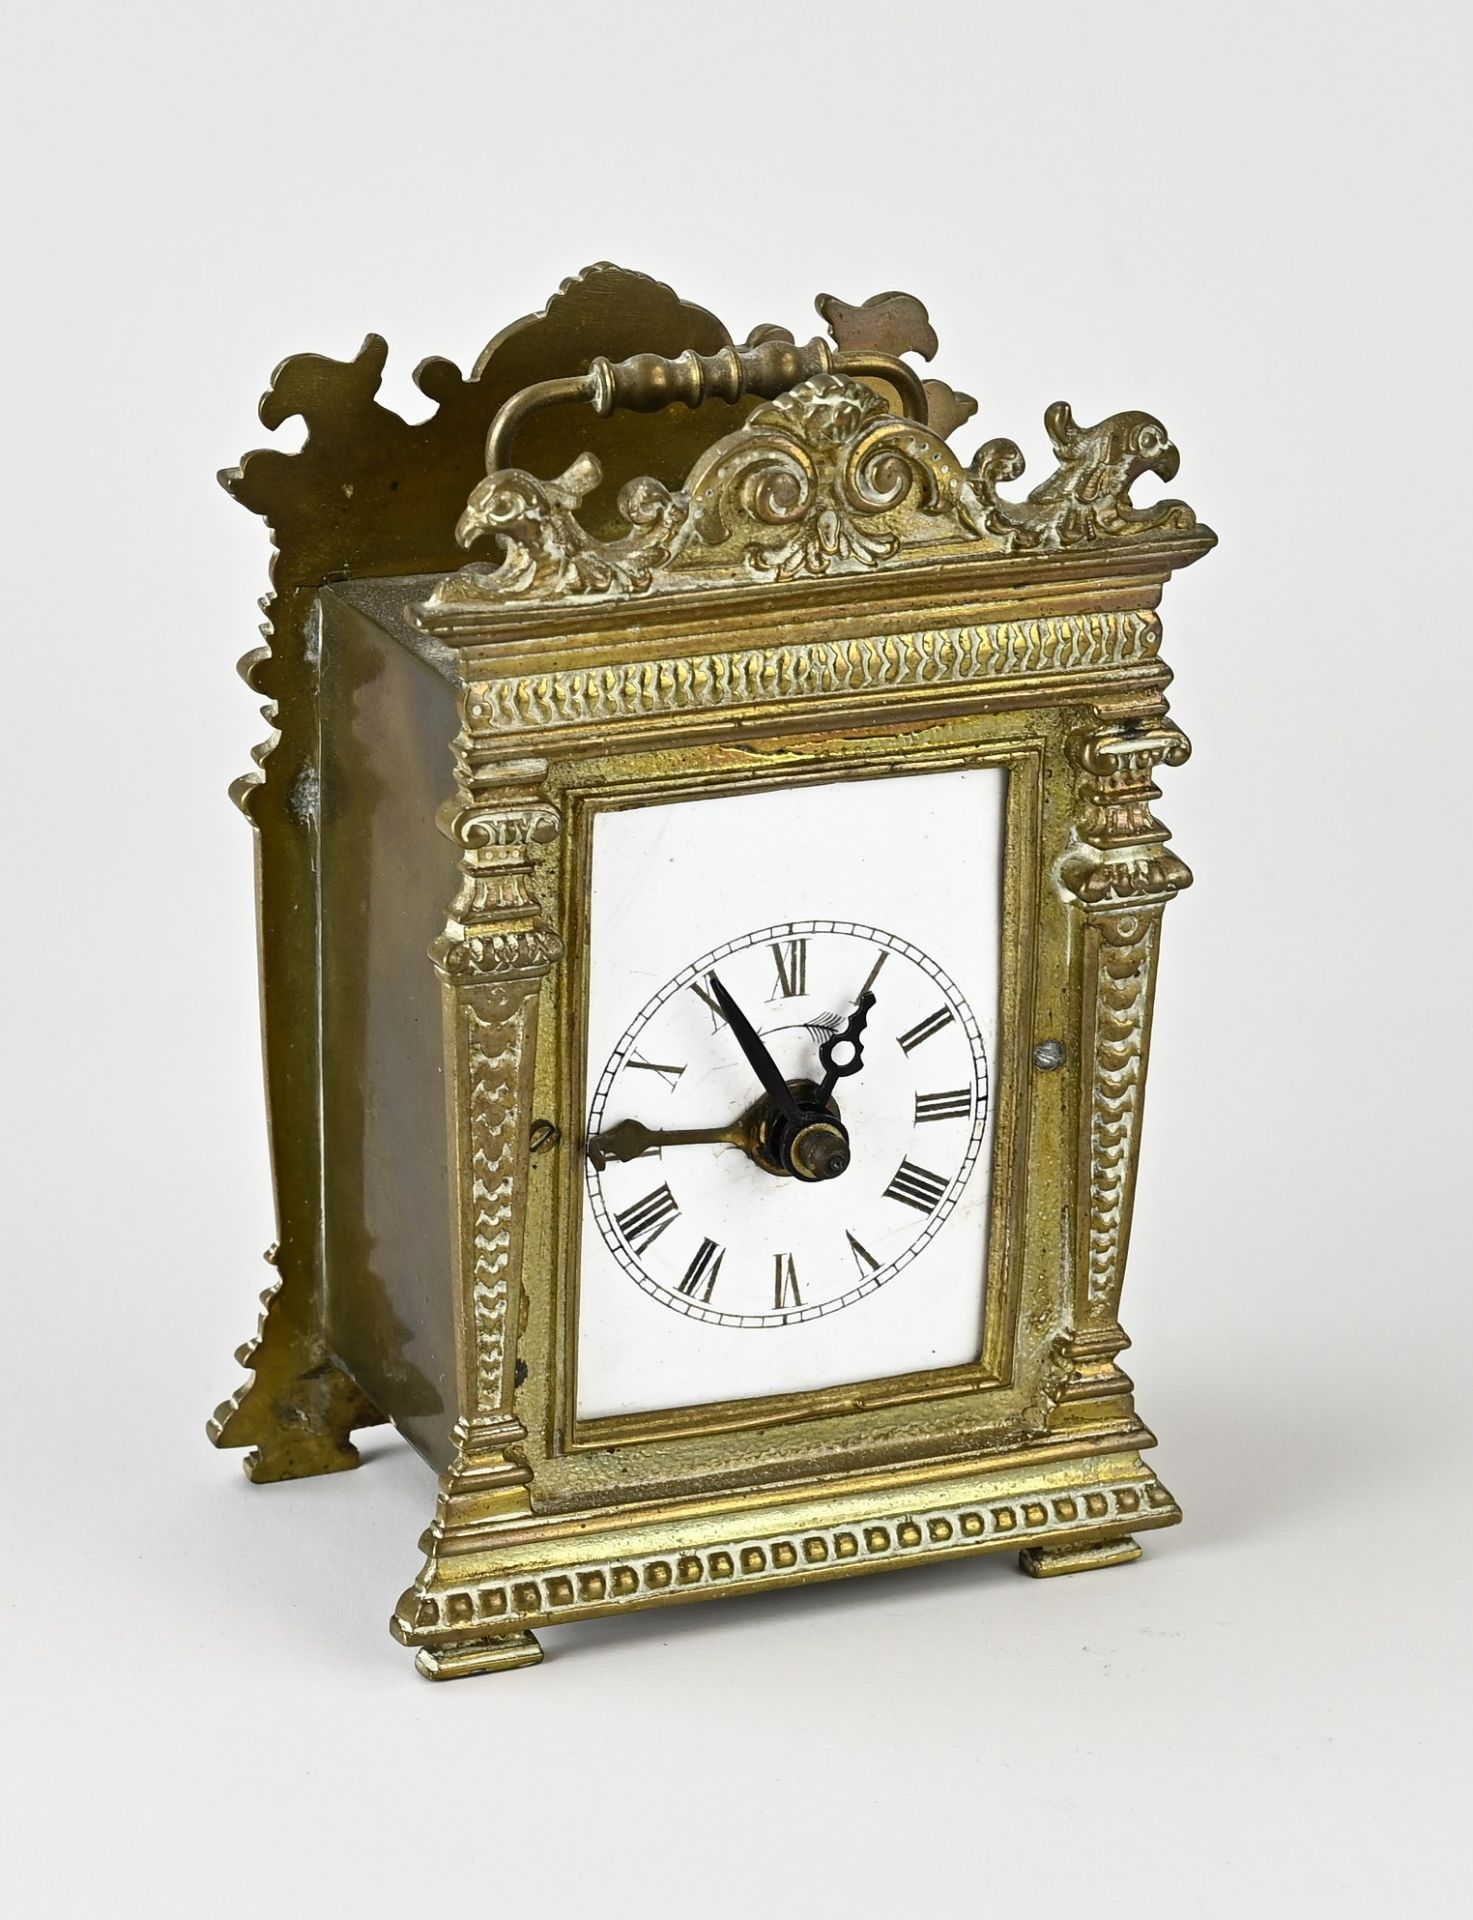 Antique travel alarm clock